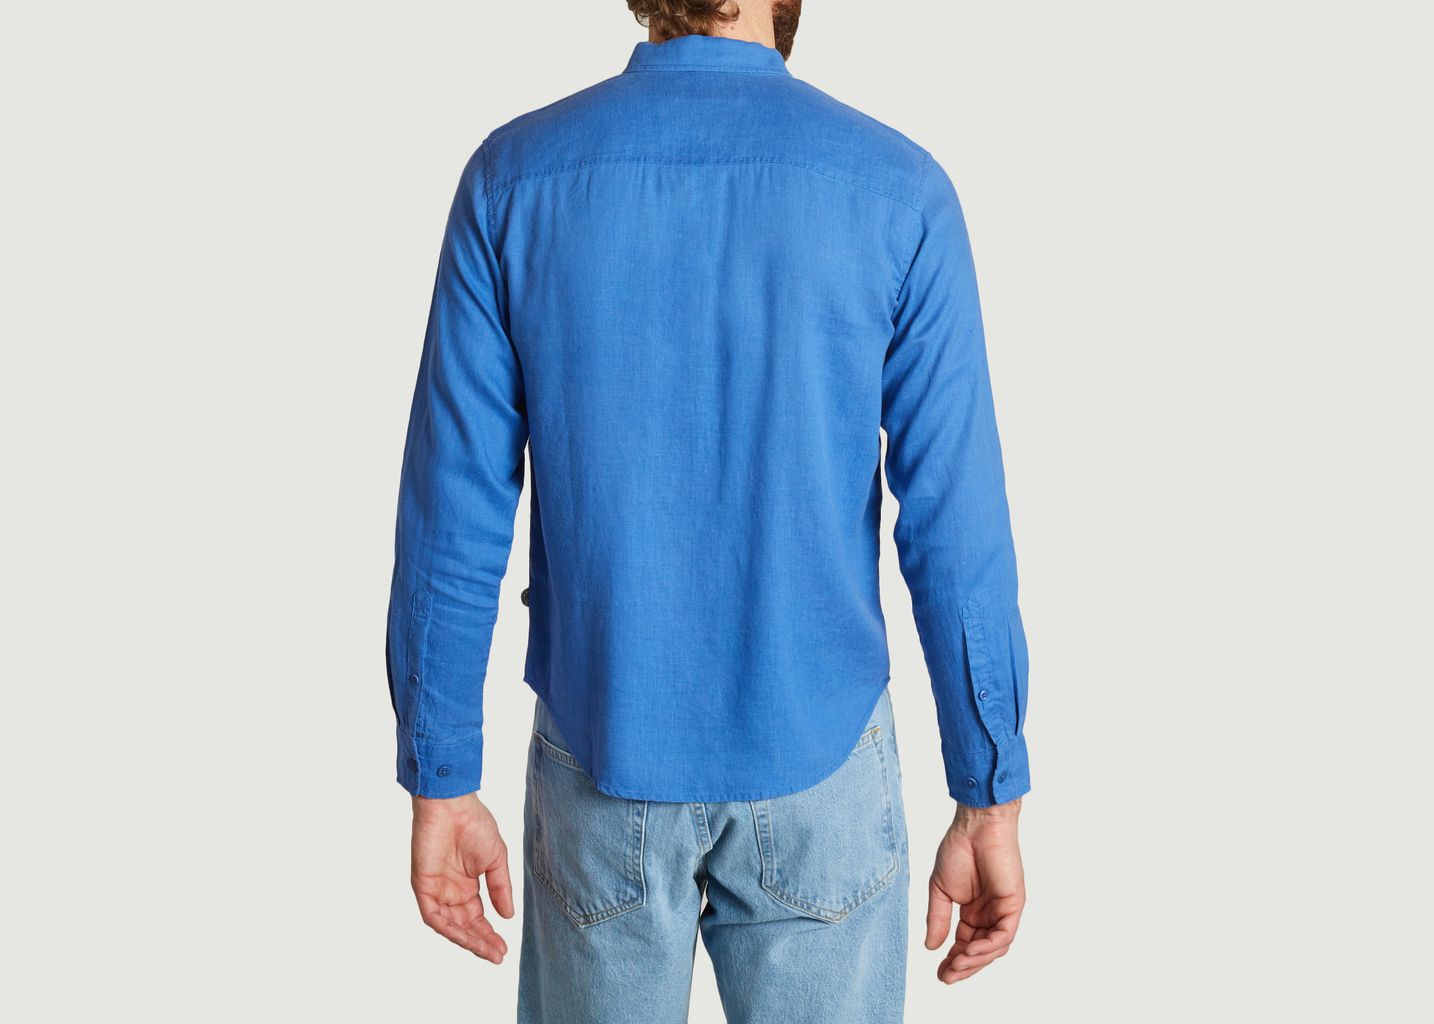 Hemp Ant blue shirt - Thinking Mu 